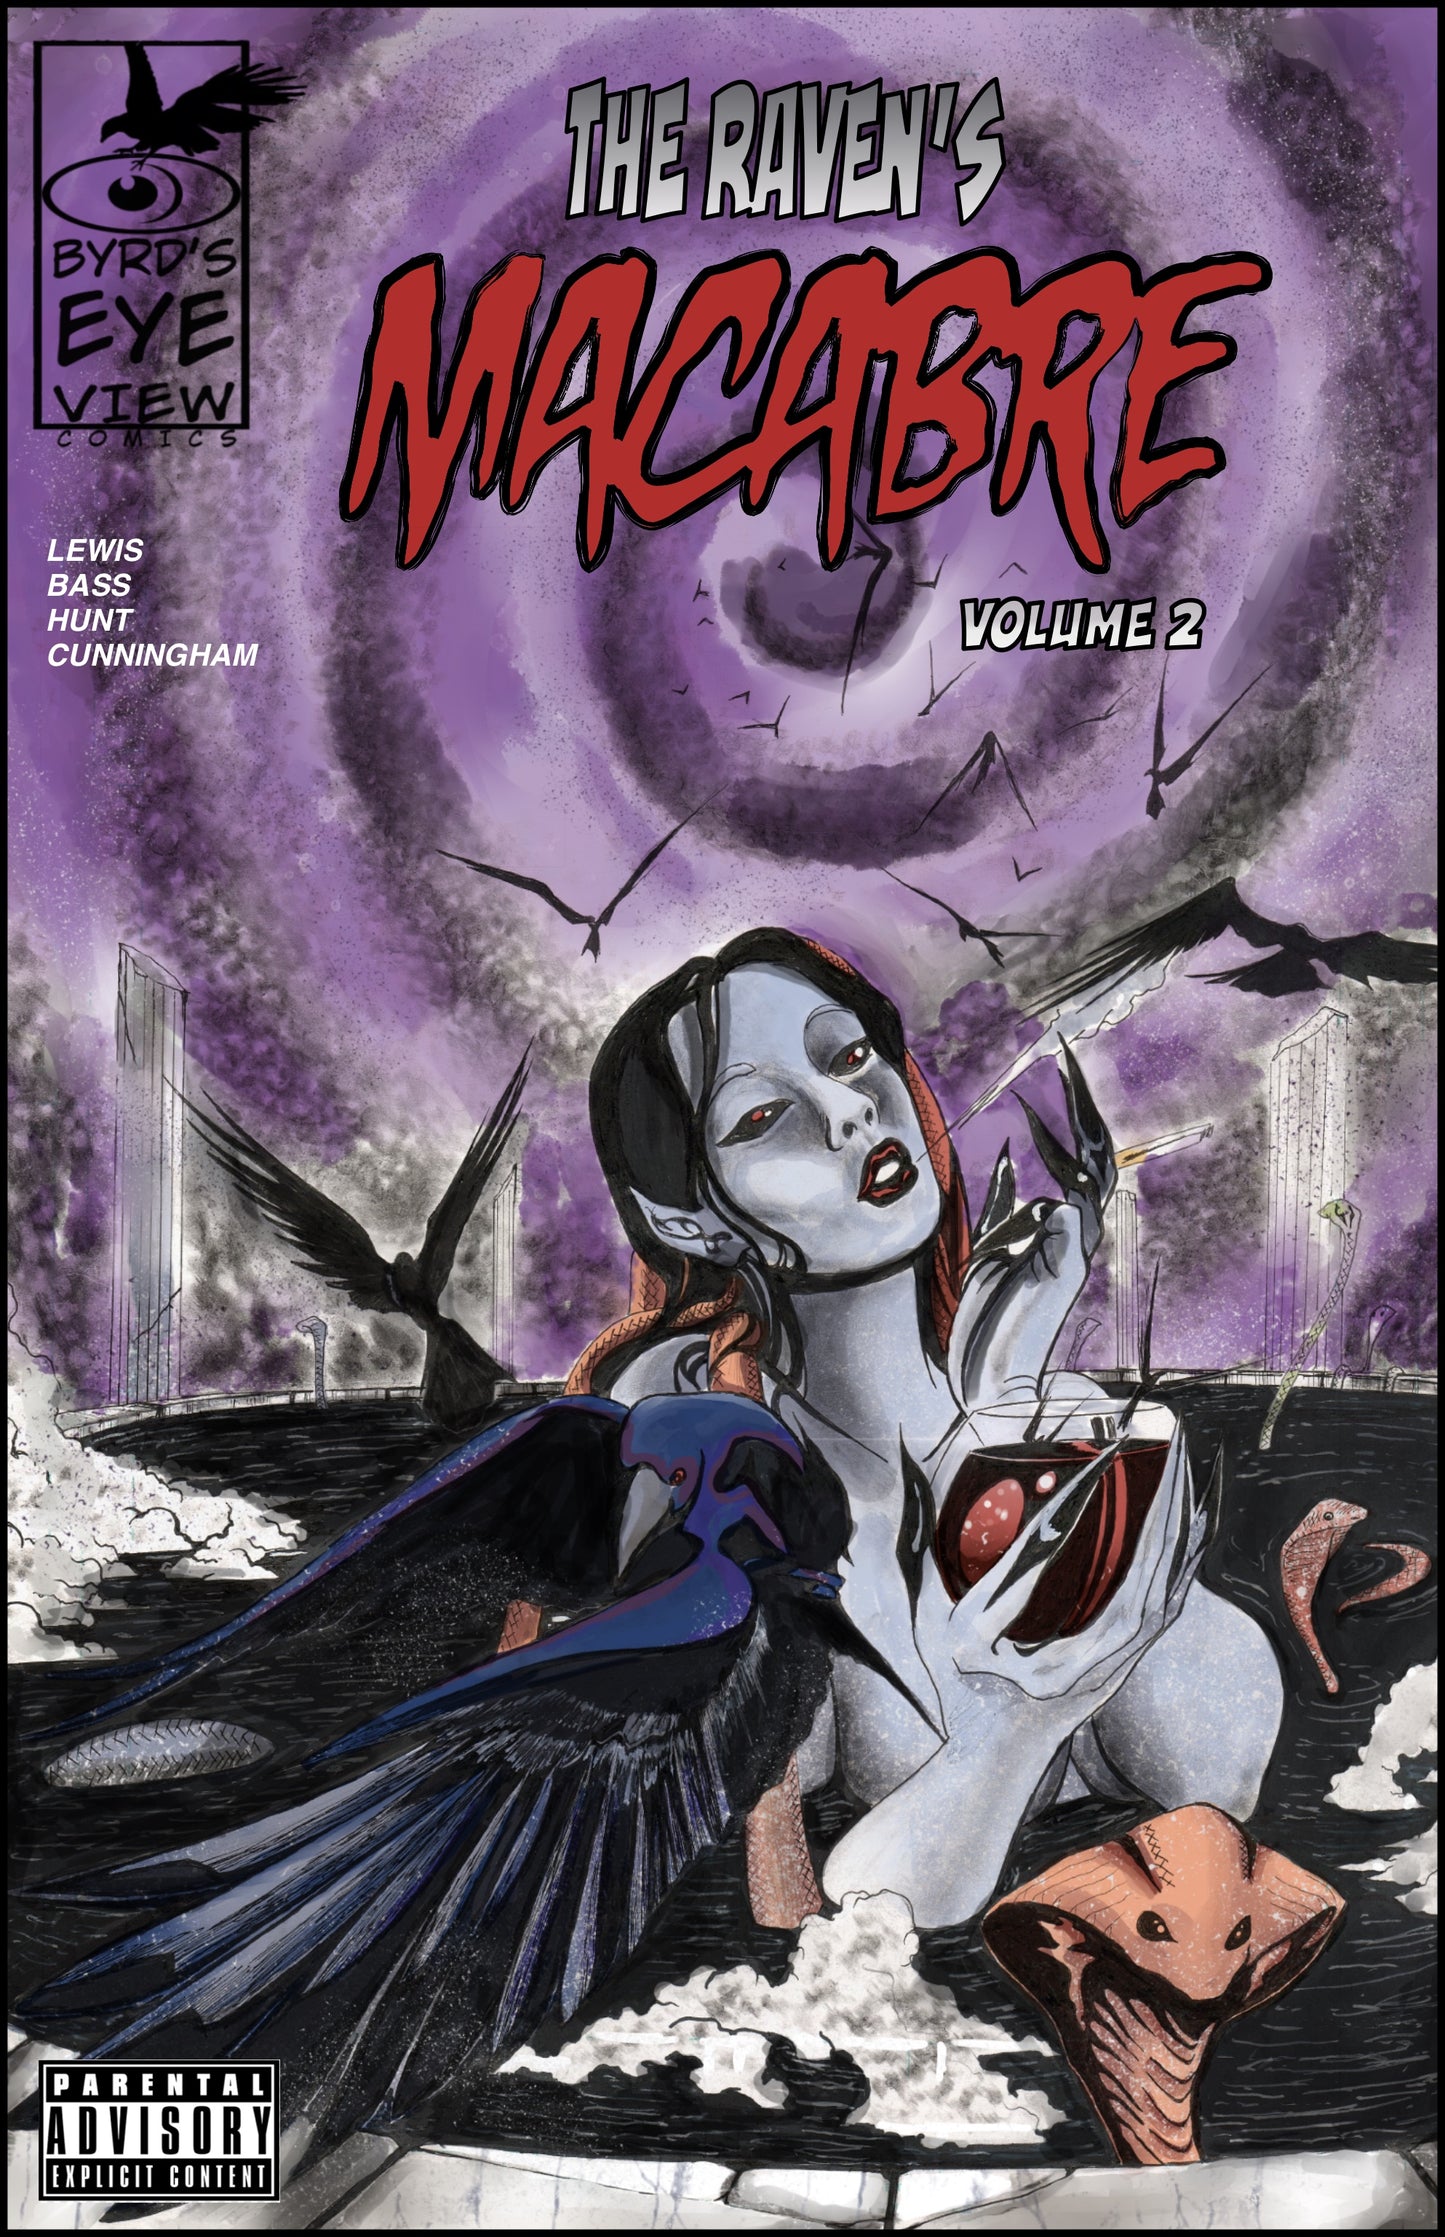 The Raven’s Macabre Volume 2-Cover 1 (PRE-ORDER)